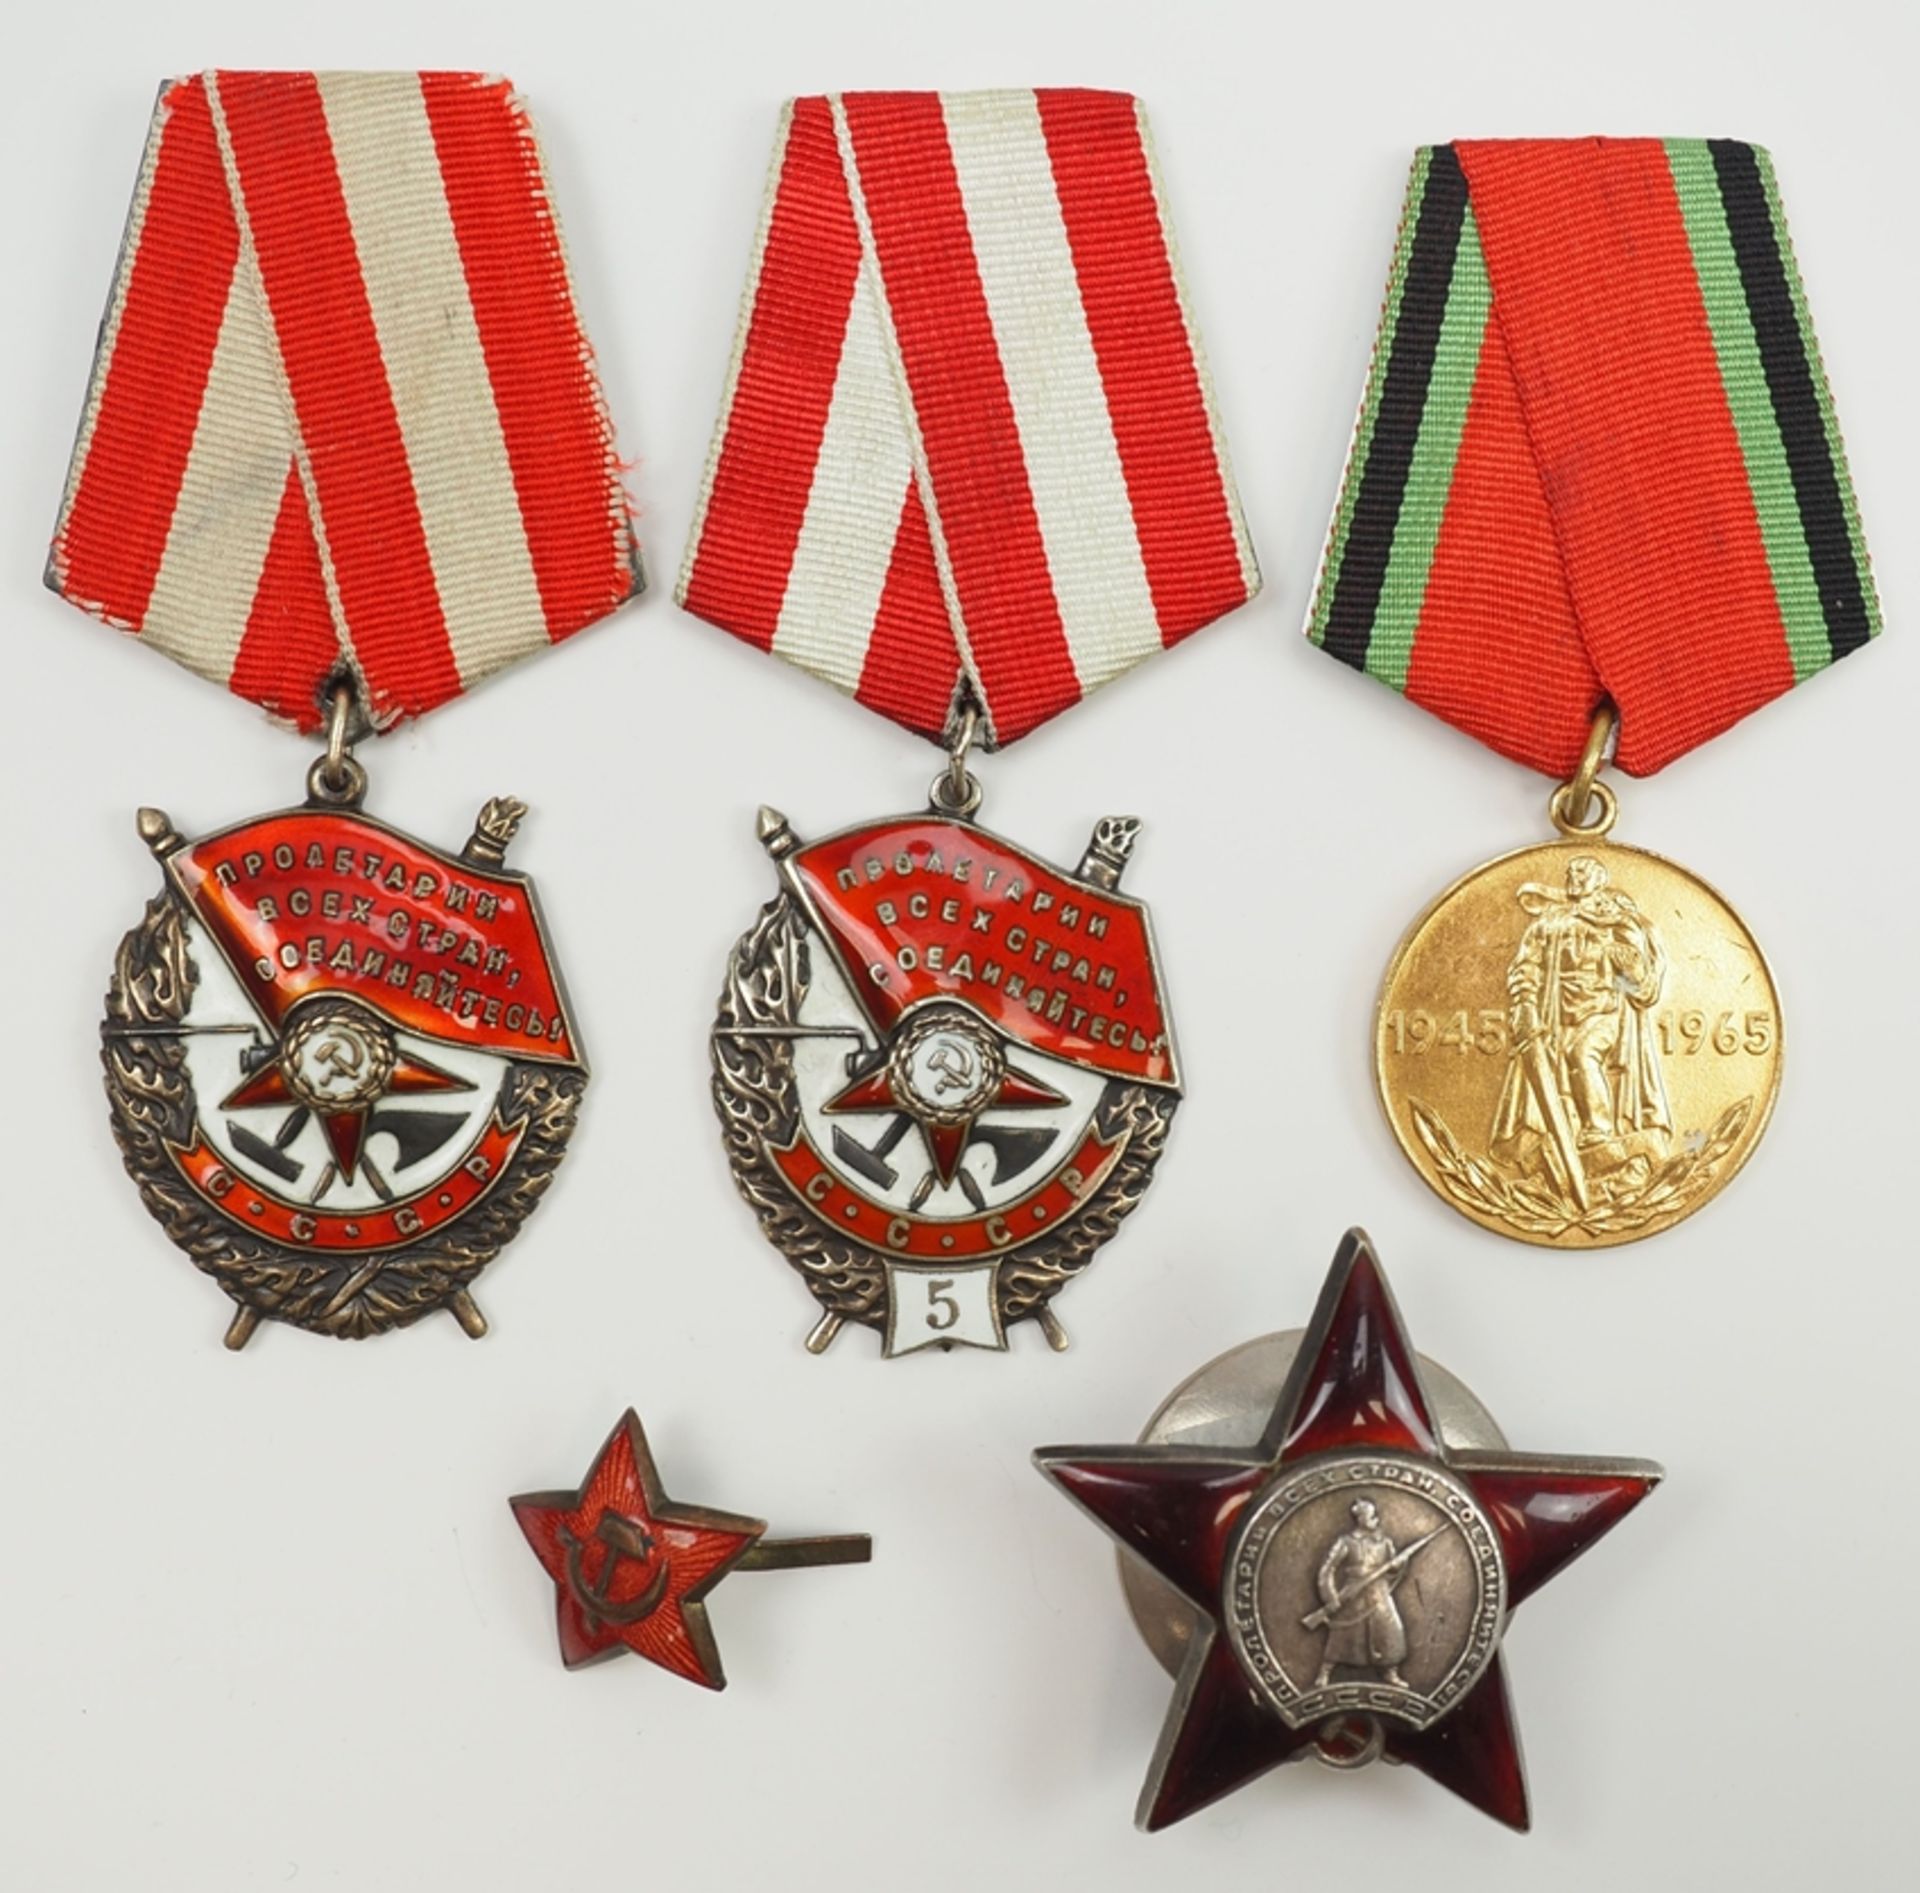 Sowjetunion: Lot Auszeichnungen.